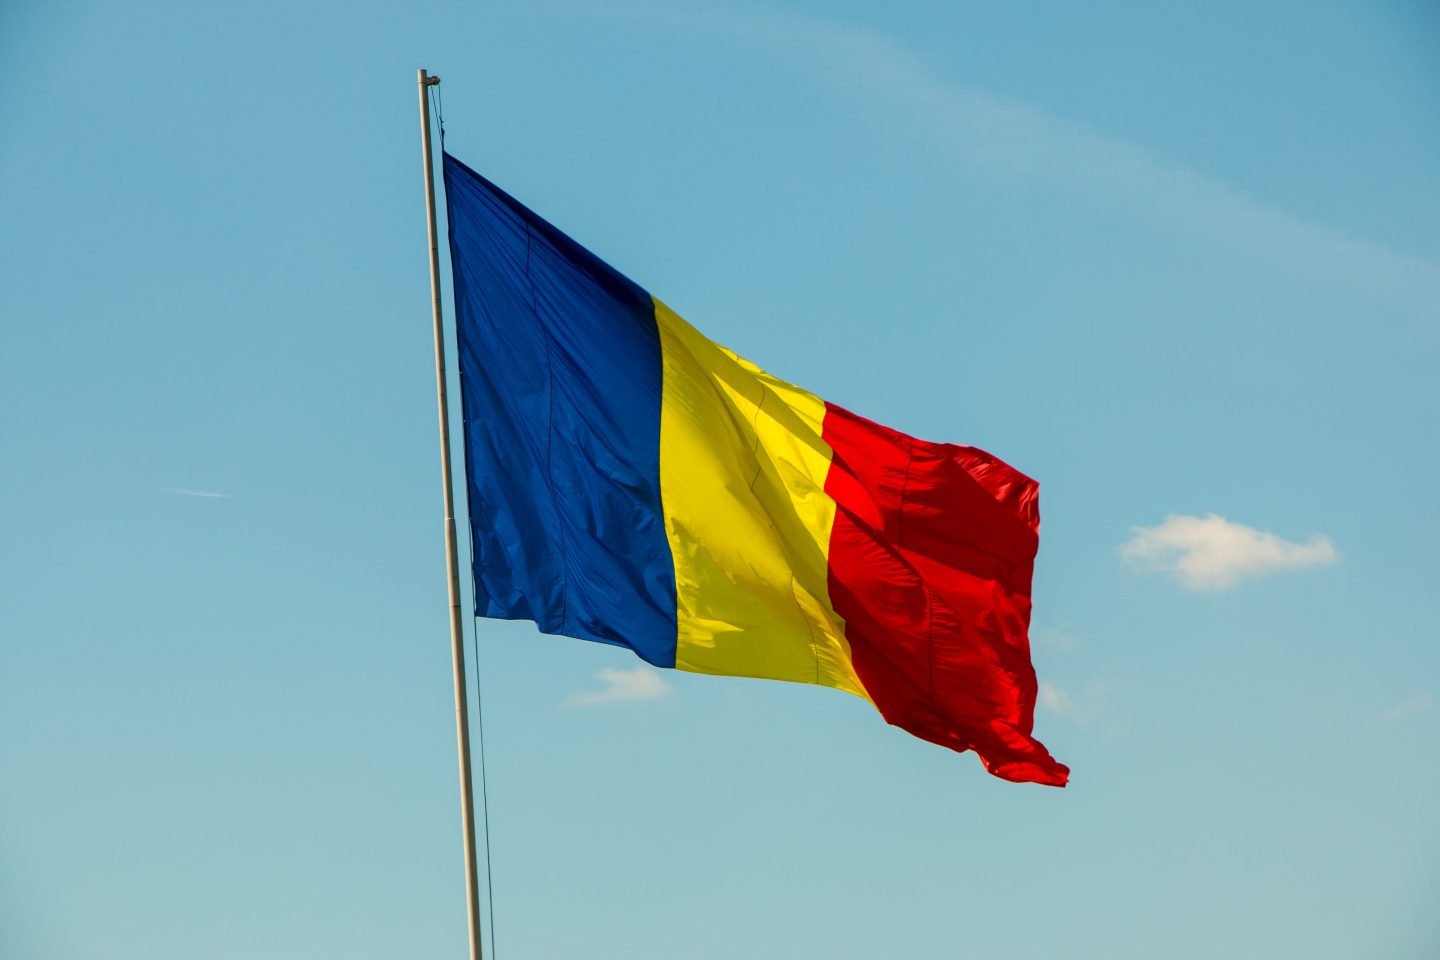 În România, opoziția a anunțat armistițiu pe perioada de criză, provocată de COVID-19